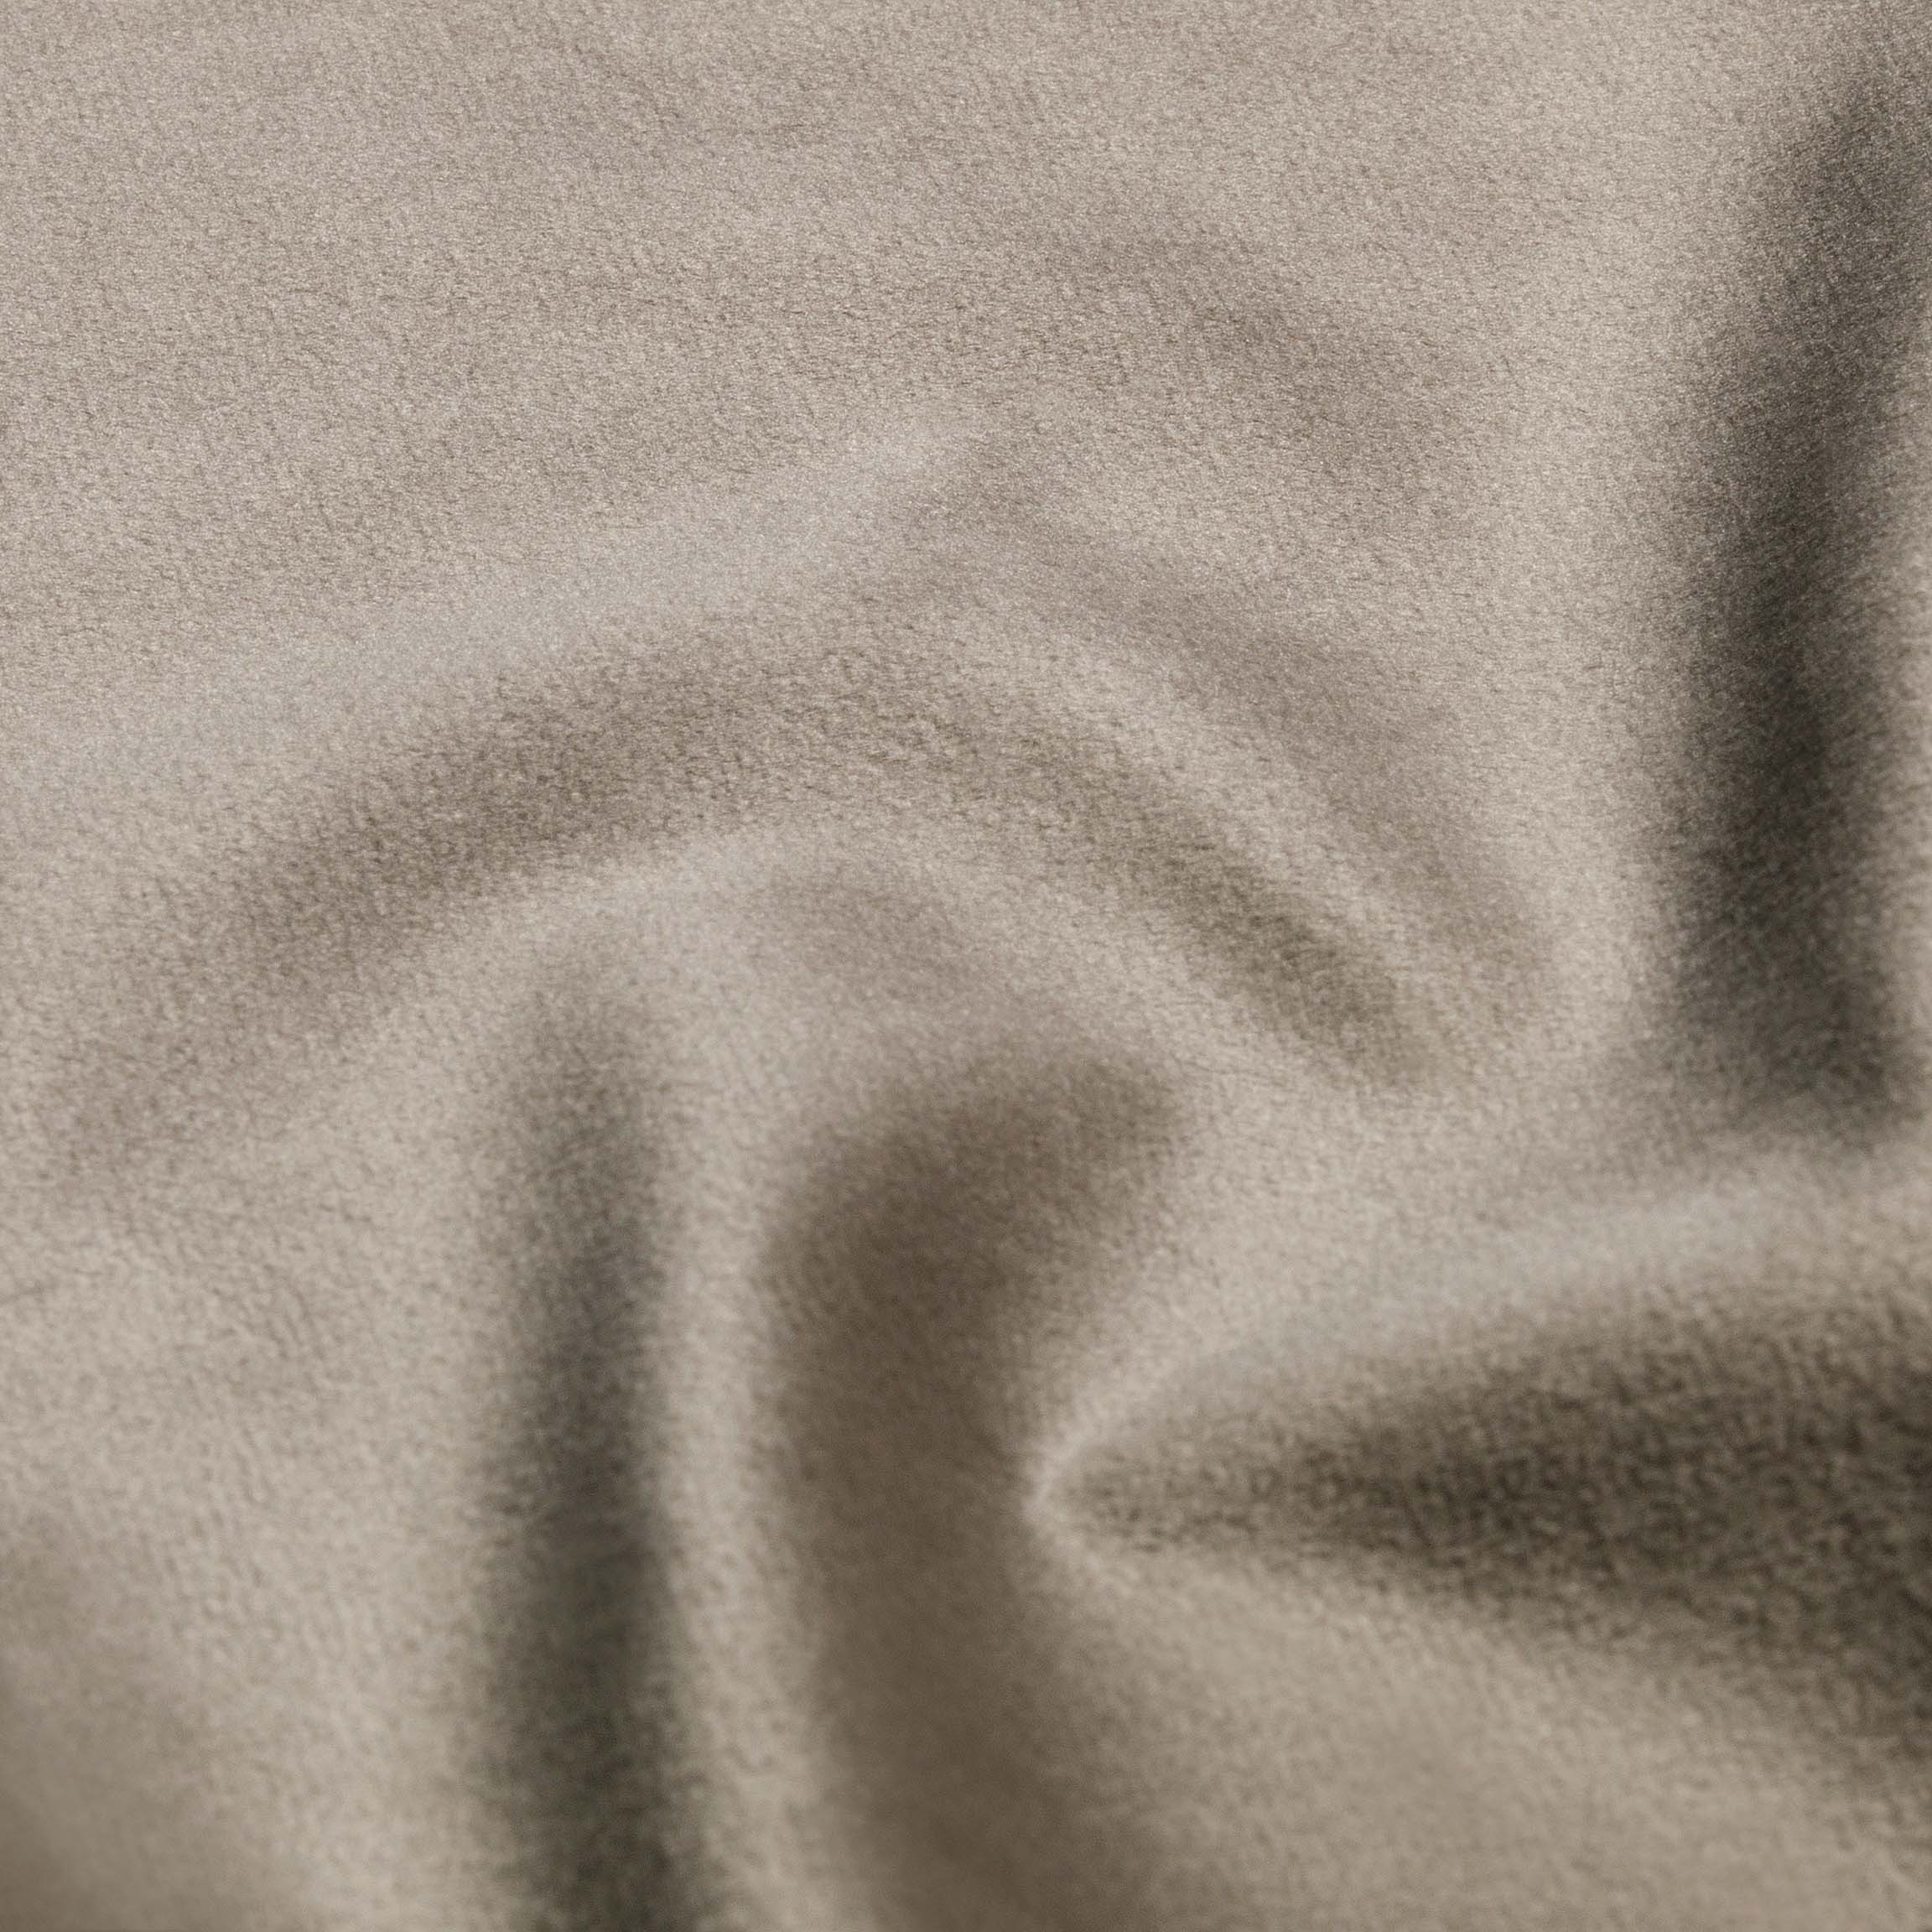  Портьерная ткань SILKY GREY, ширина 280 см  - Фото